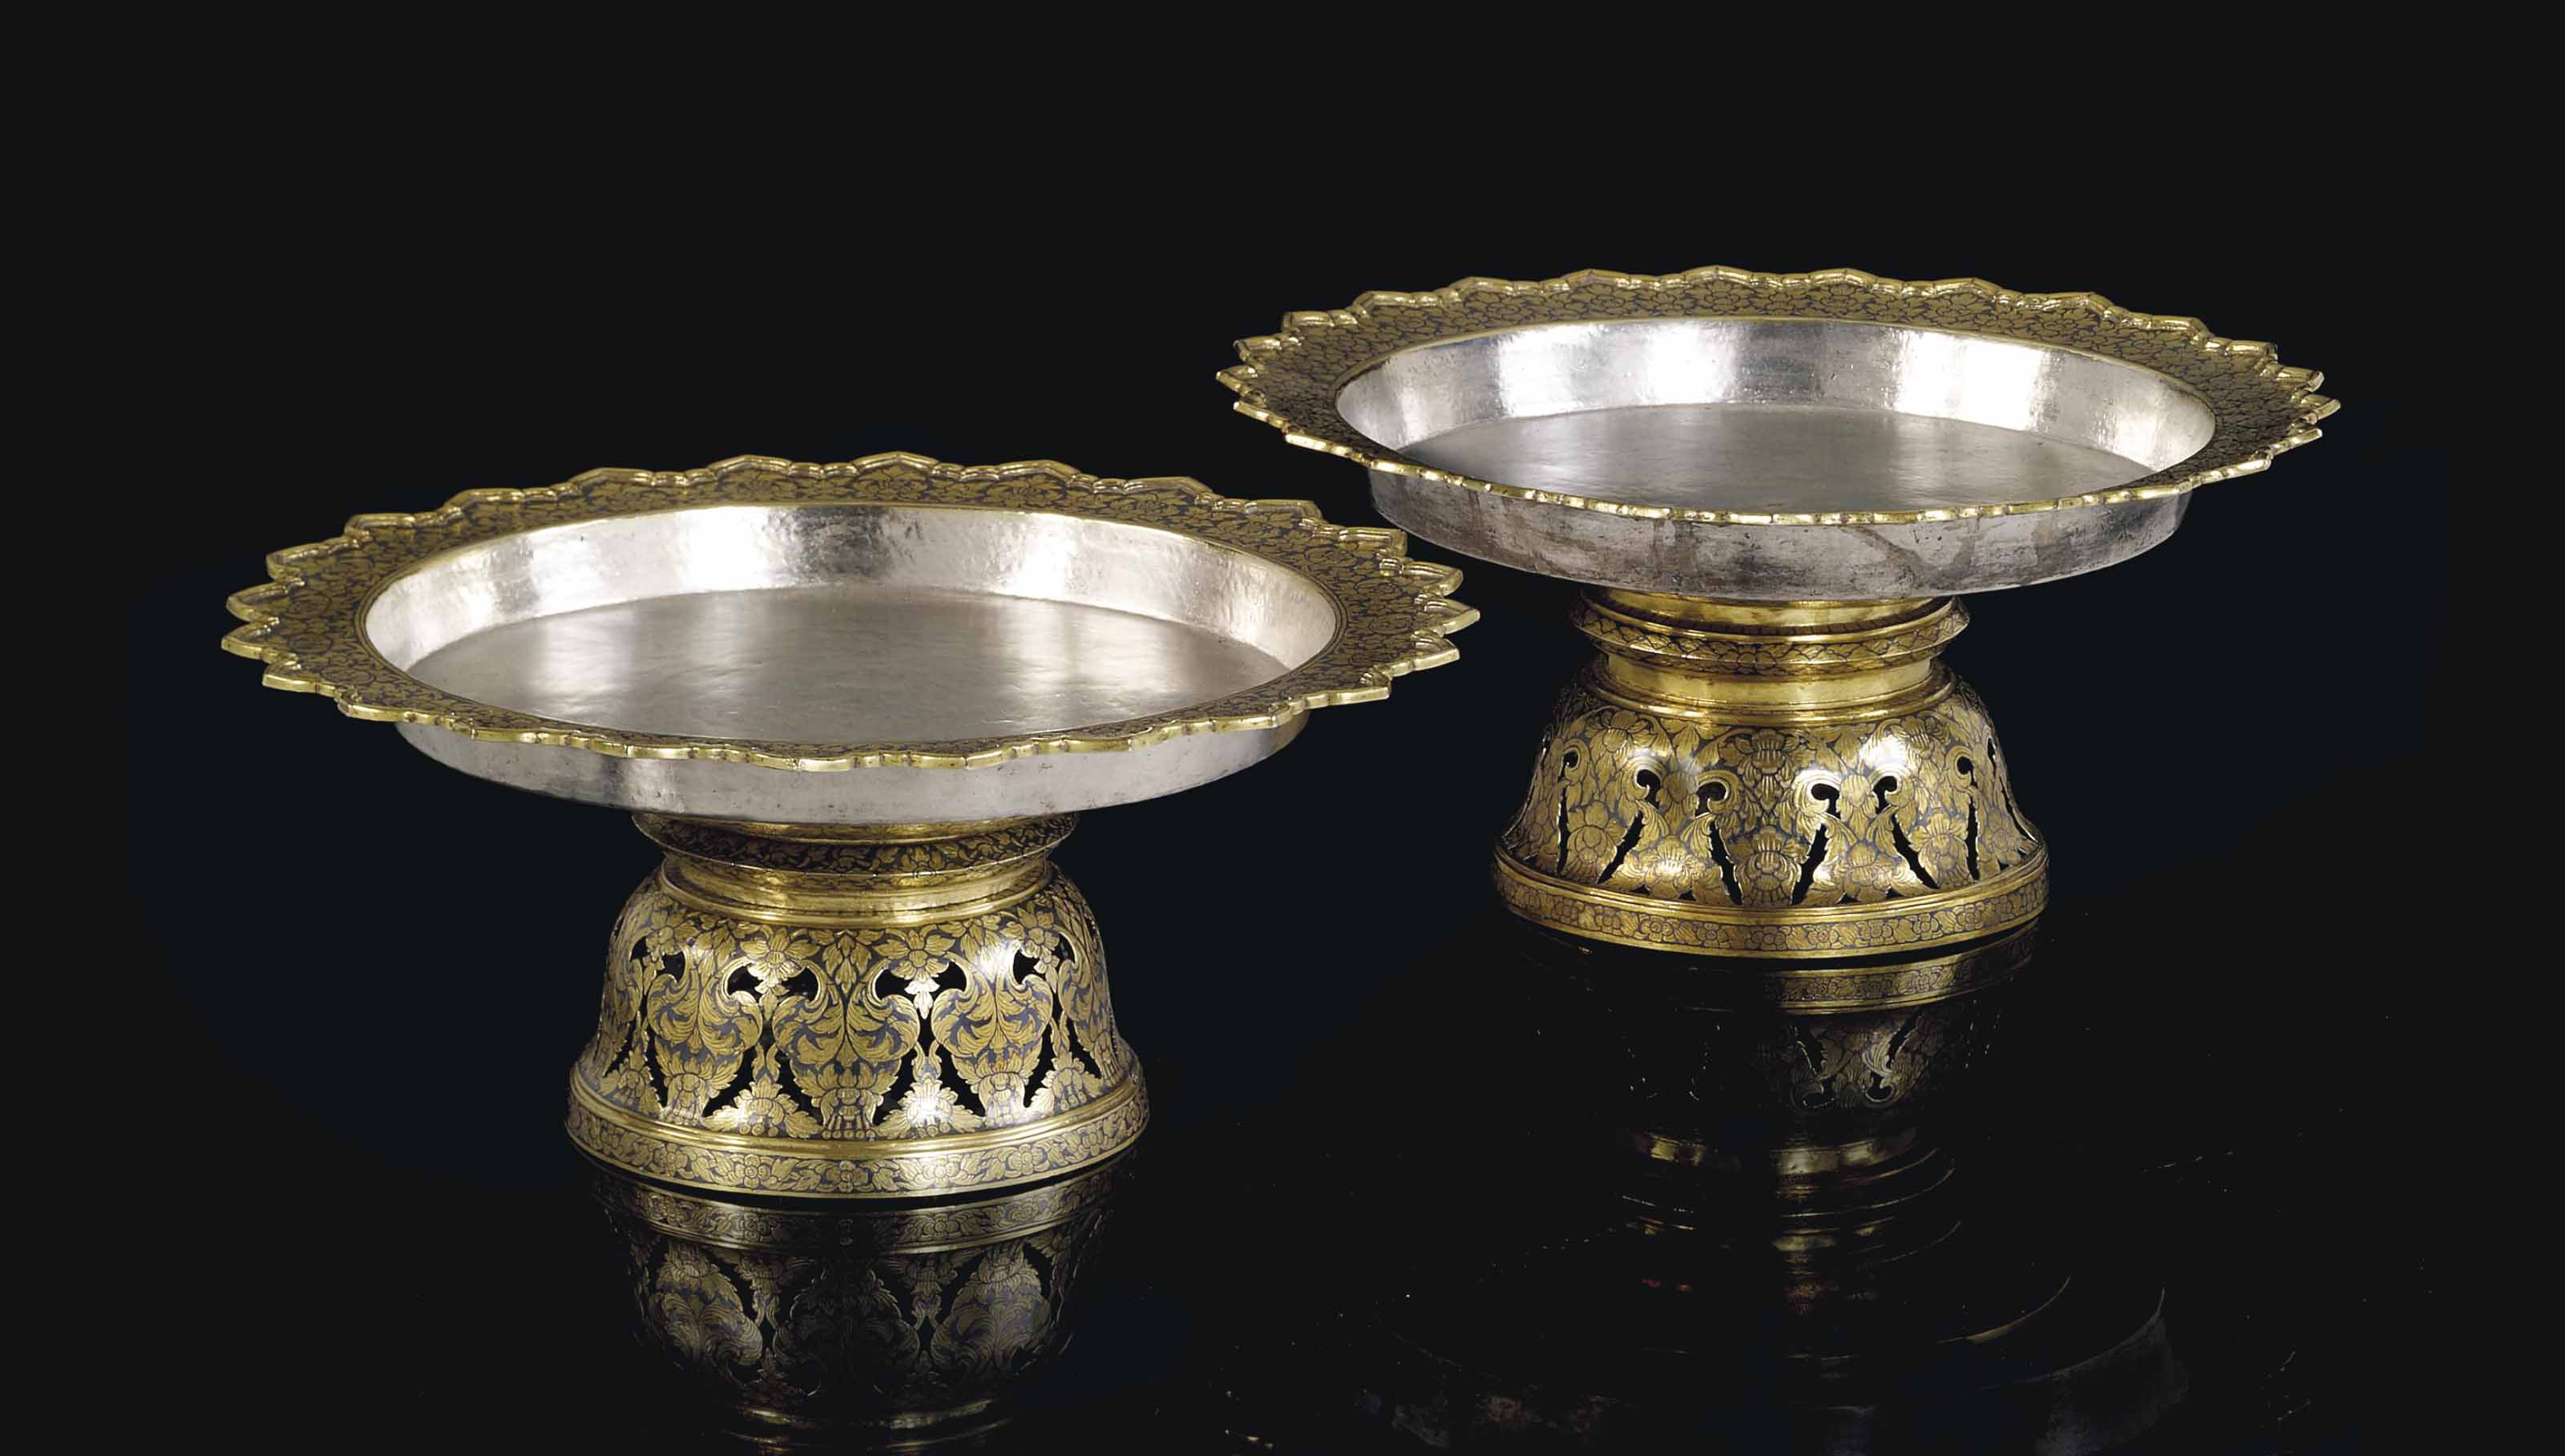 拍品221 19世纪 泰国錾银高足杯